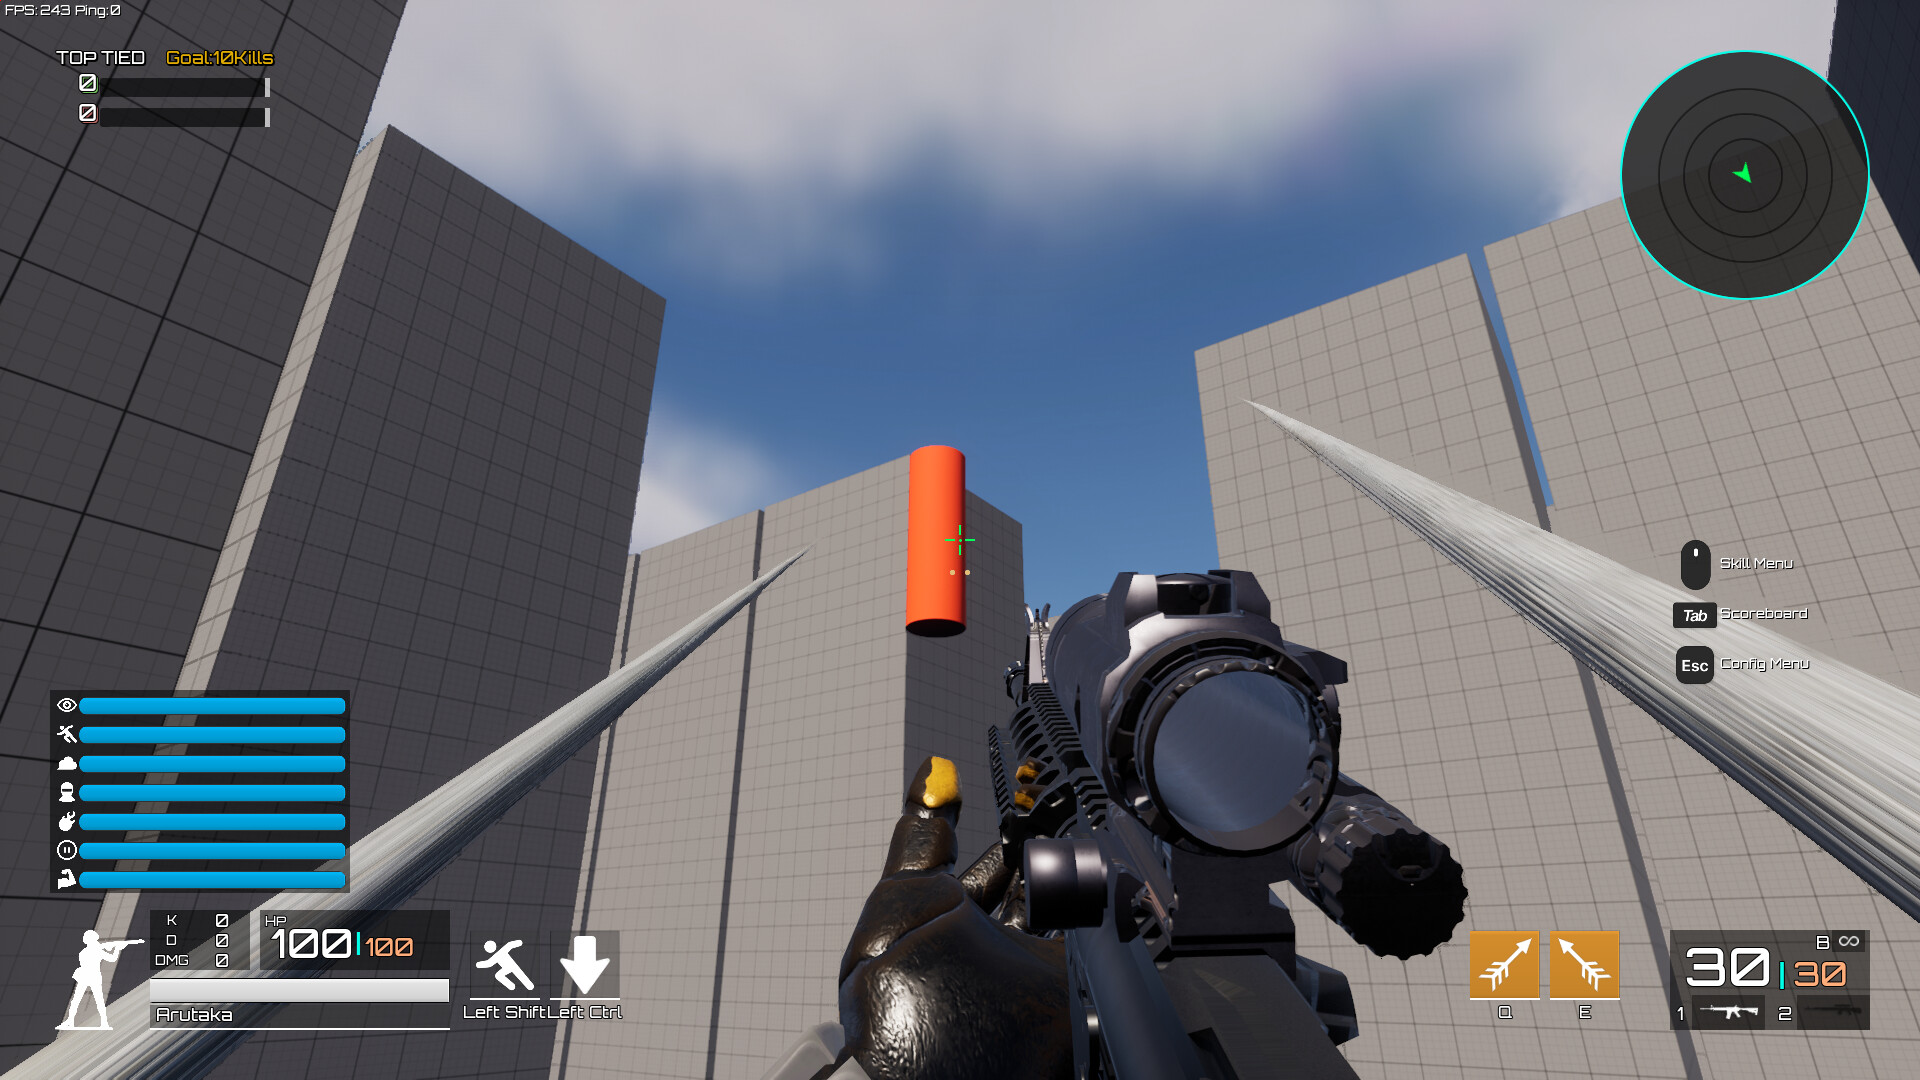 Como criar um jogo de tiro em terceira pessoa na Unity 3D - Make Indie Games